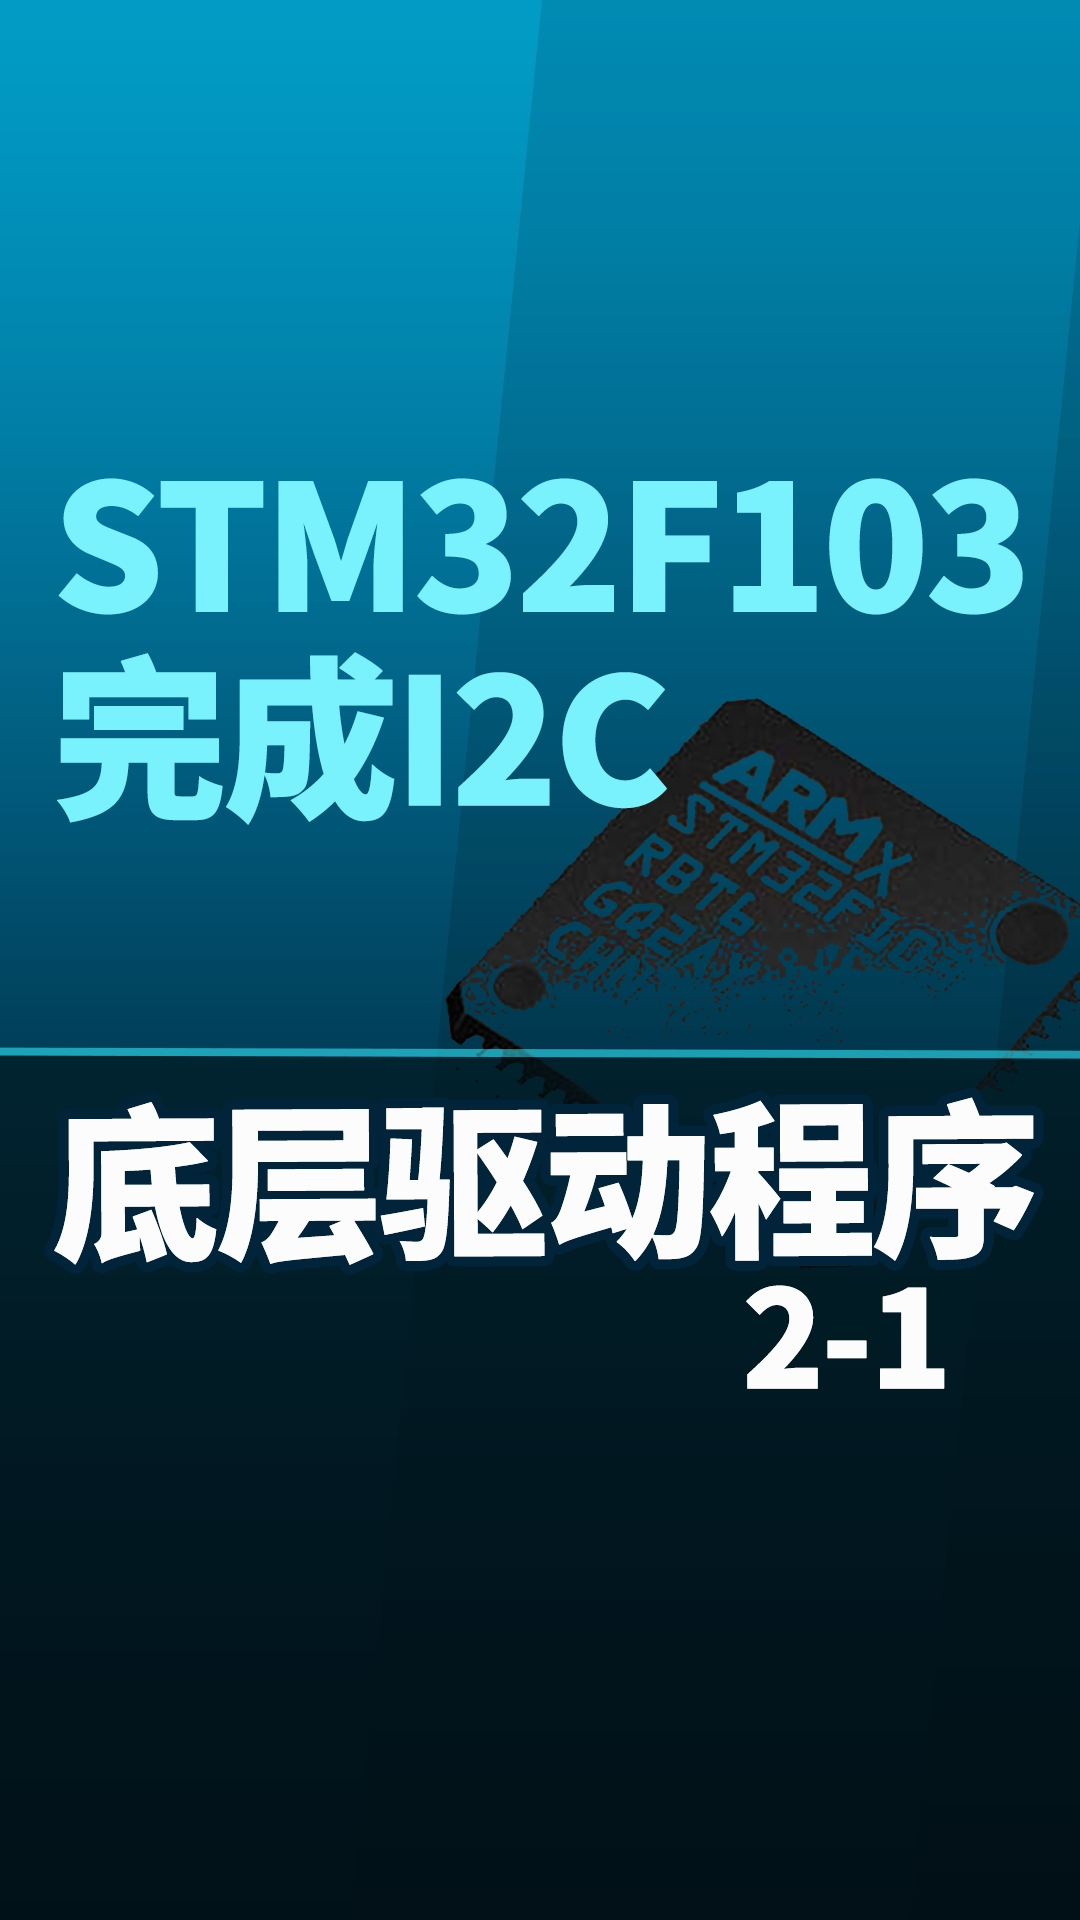 STM32F103-完成I2C底层驱动程序2-1#嵌入式开发 